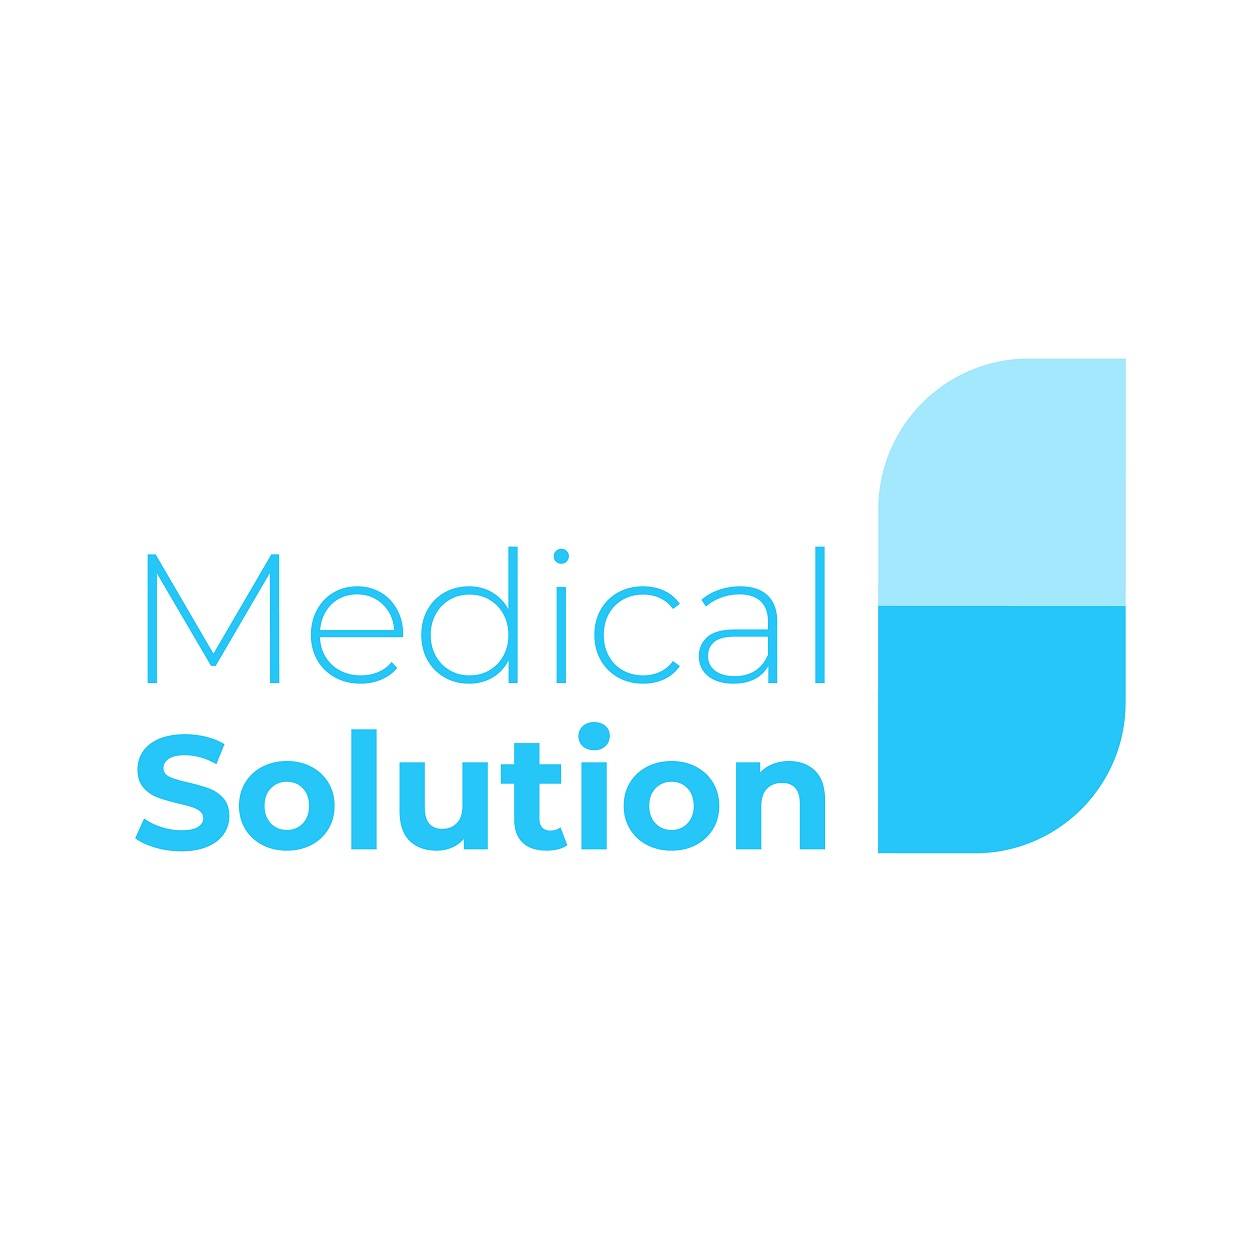 Medical solution logo for medicine brand